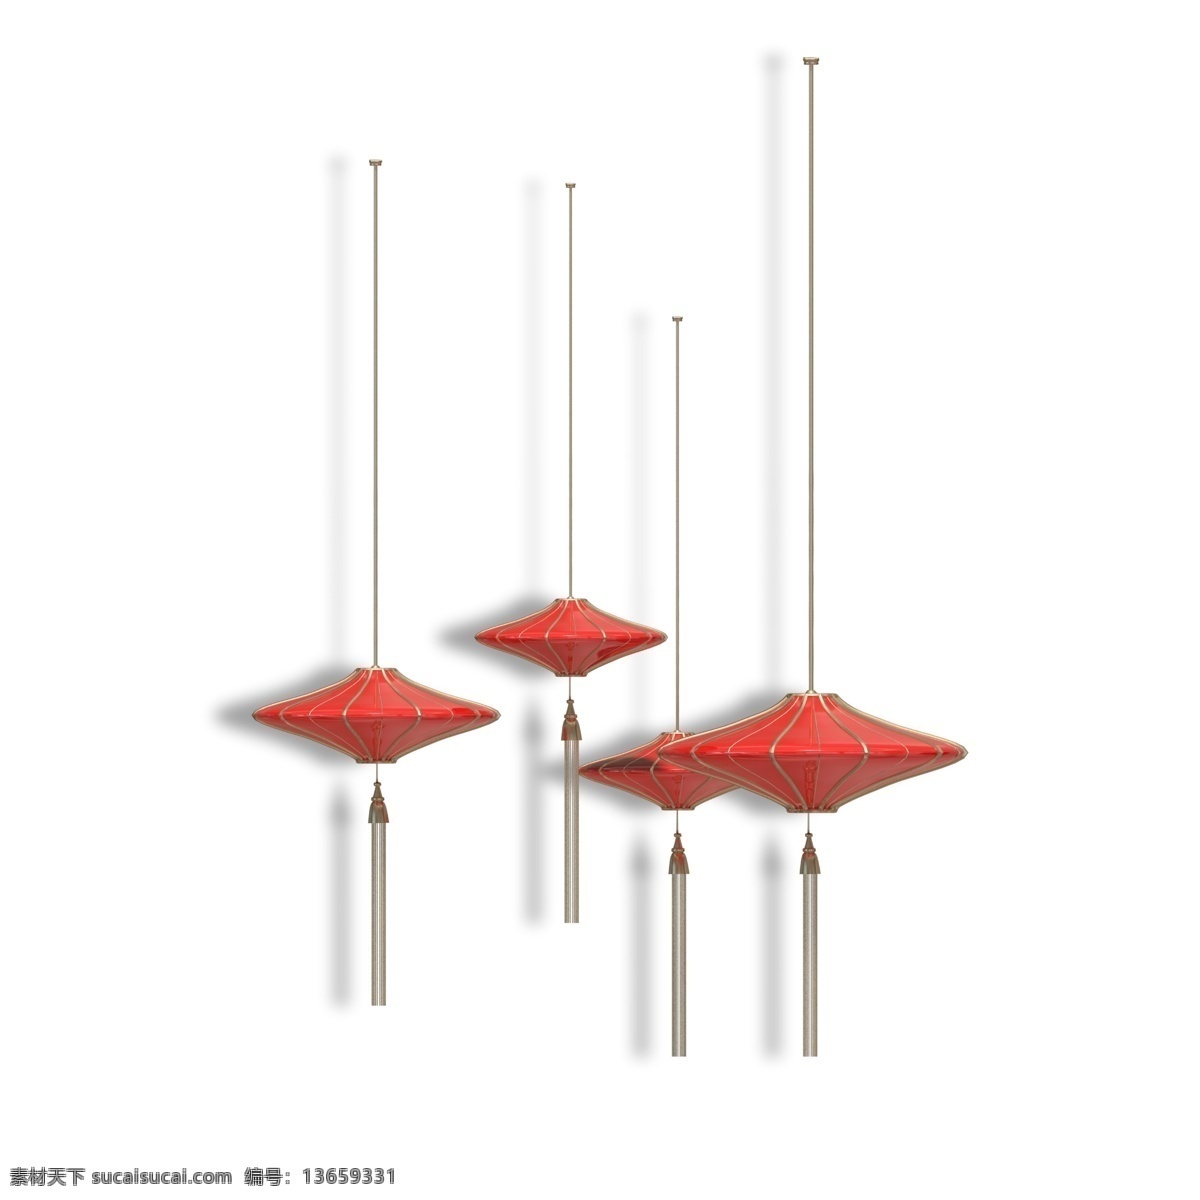 精致 家居 小 装饰 灯笼 精致的 灯具 红色 红色灯笼 时尚 现代 抽象的 灯 吊灯 小吊灯 装饰灯